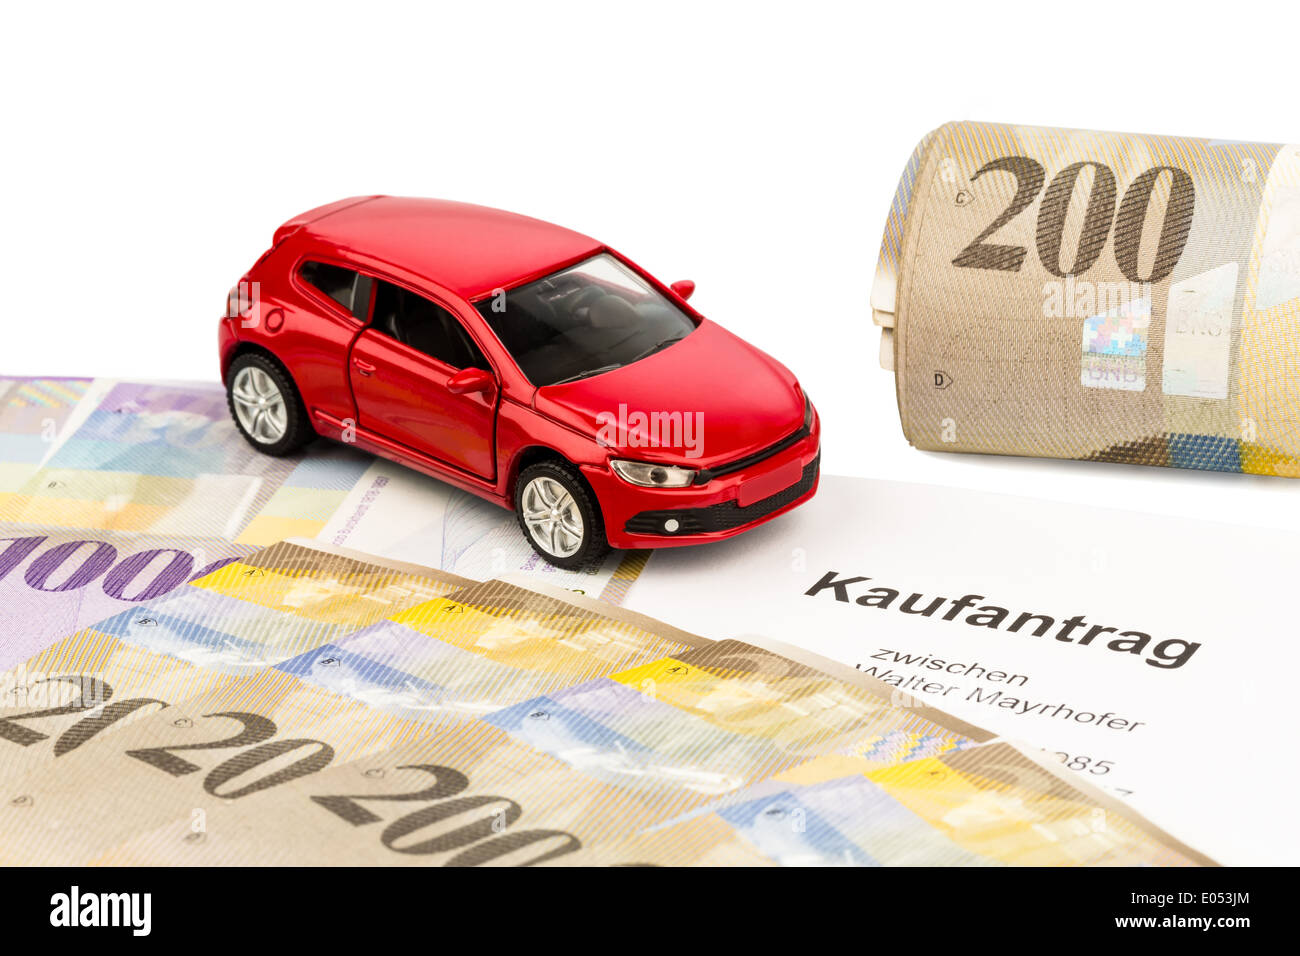 La fattura di vendita per una nuova vettura con un Swiss rivenditore di auto. Con il franco svizzero Foto Stock